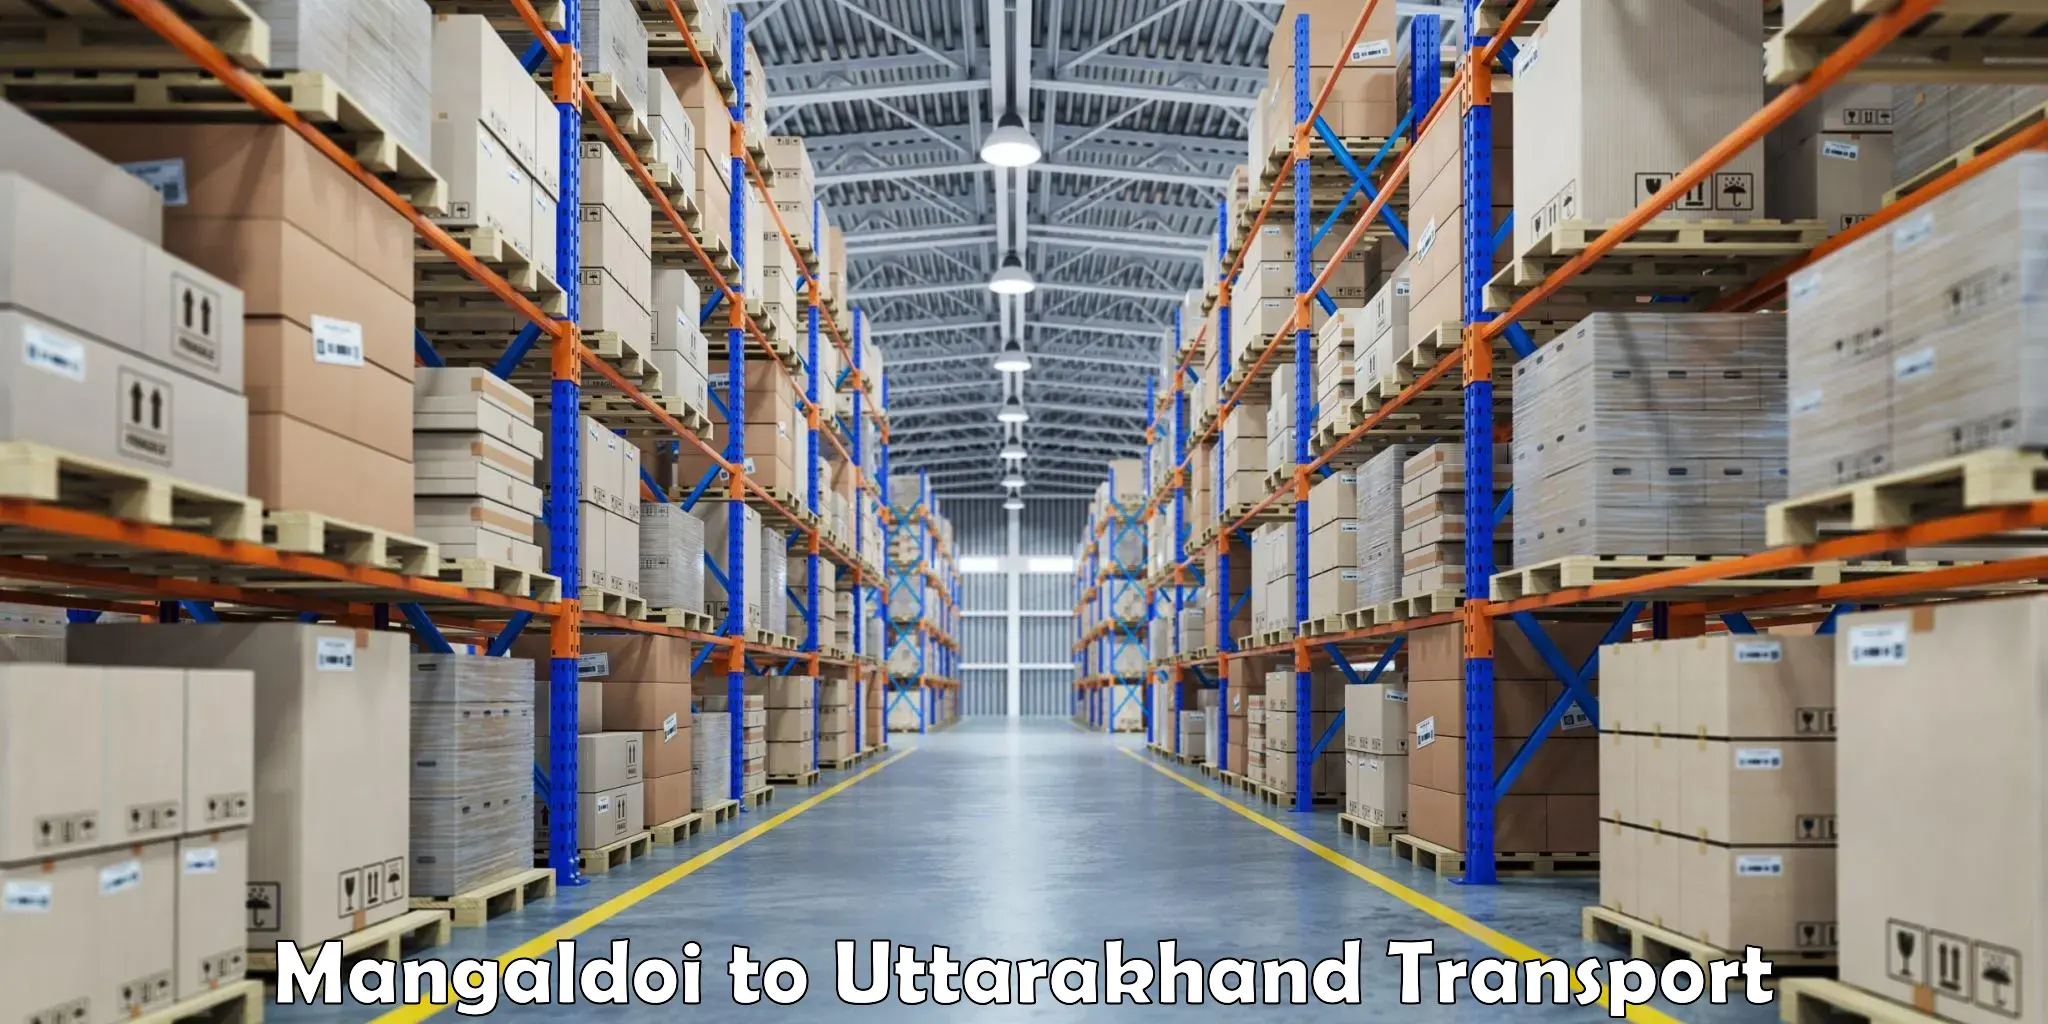 Furniture transport service Mangaldoi to Udham Singh Nagar